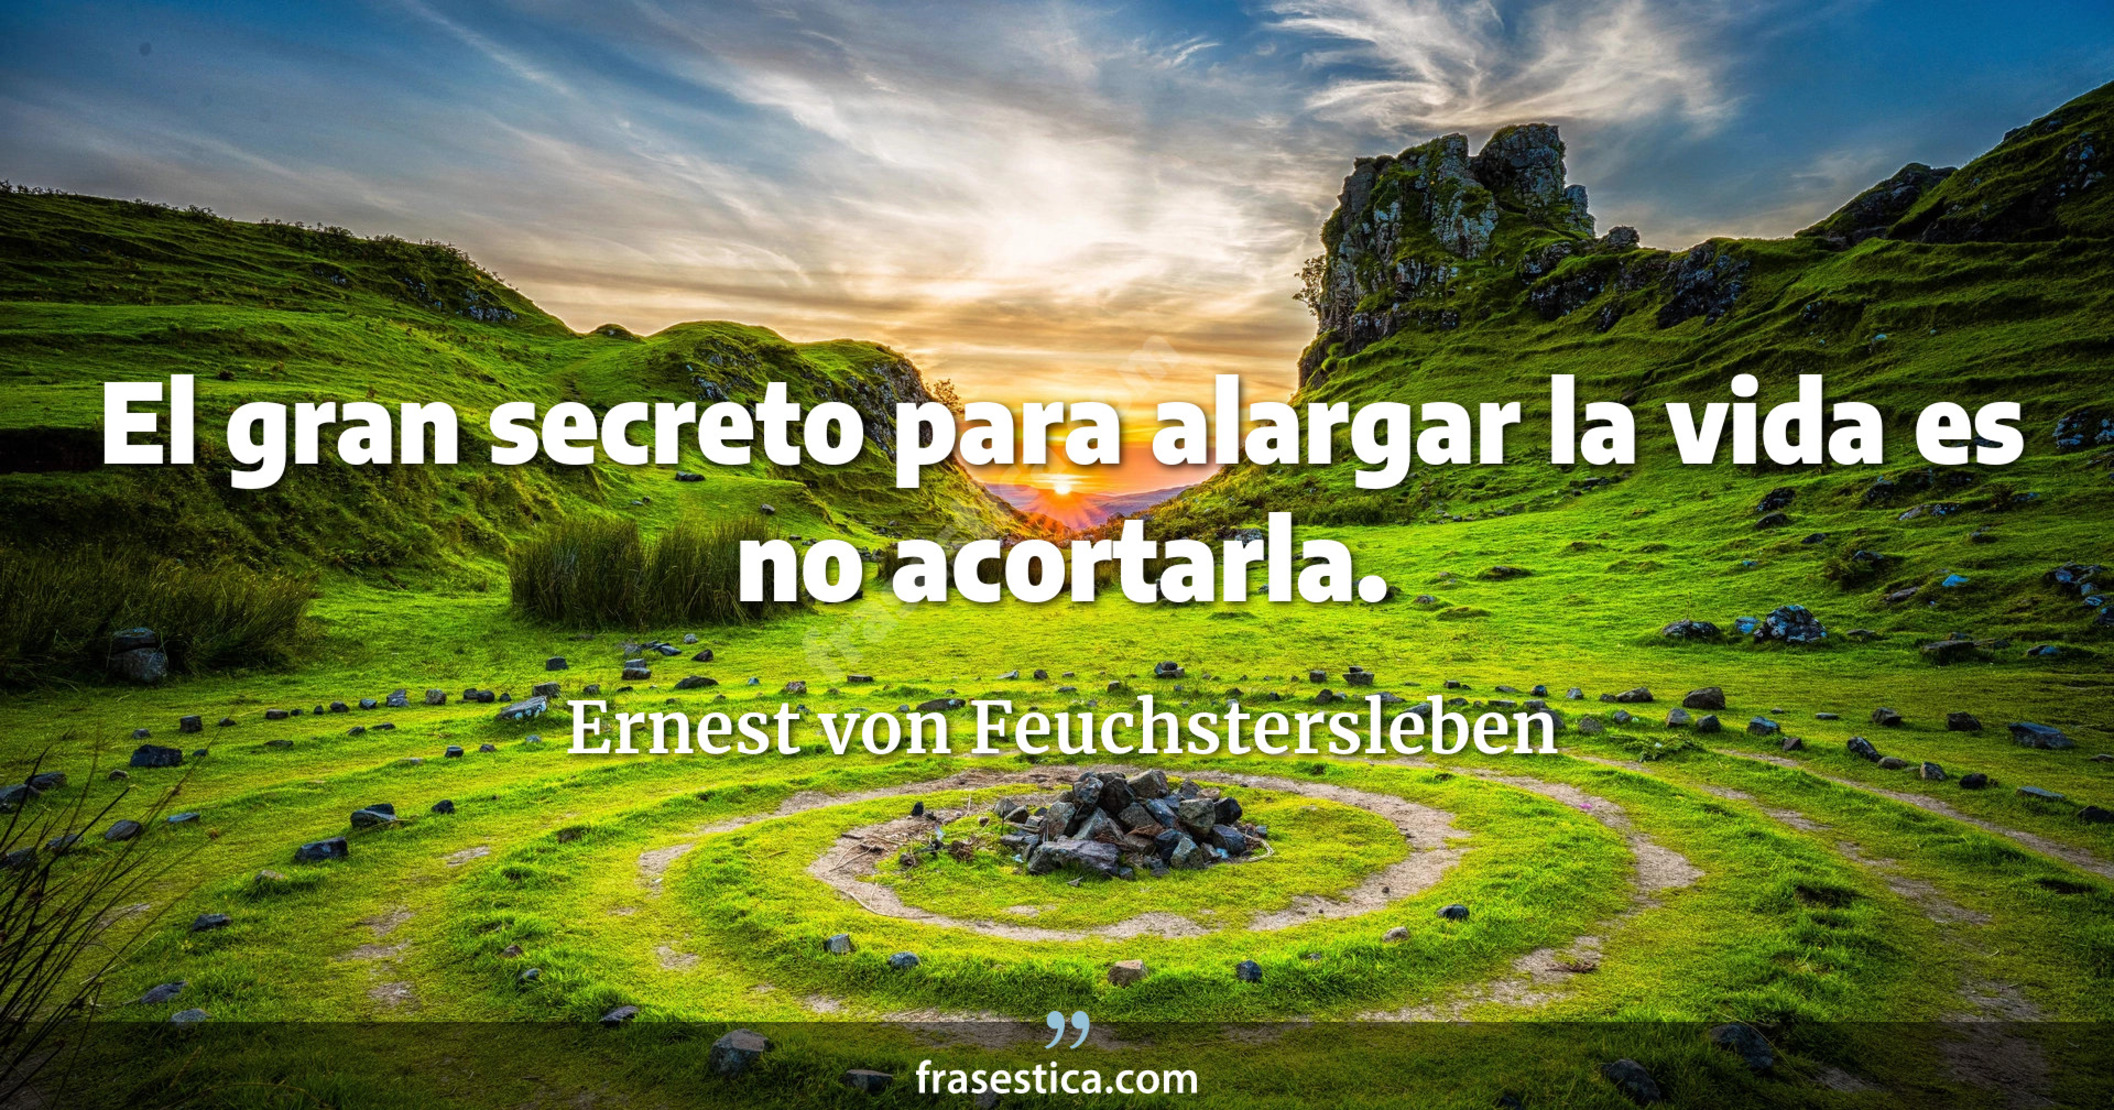 El gran secreto para alargar la vida es no acortarla. - Ernest von Feuchstersleben